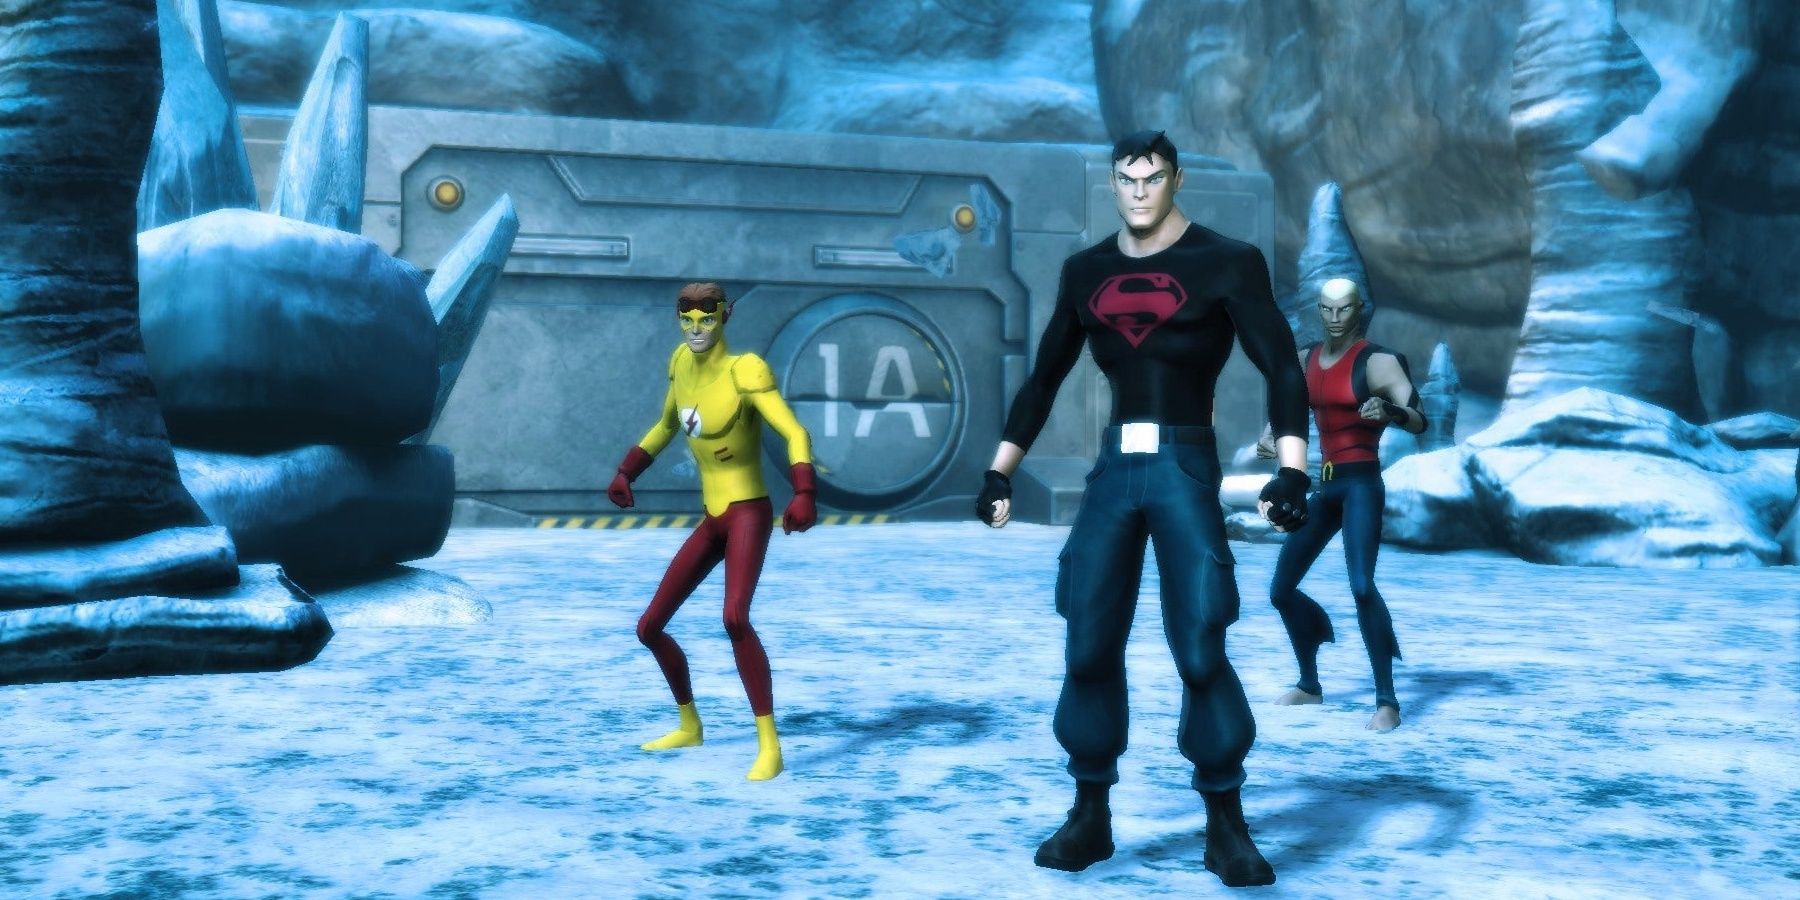 Personnages de Young Justice Legacy debout dans un environnement glacial